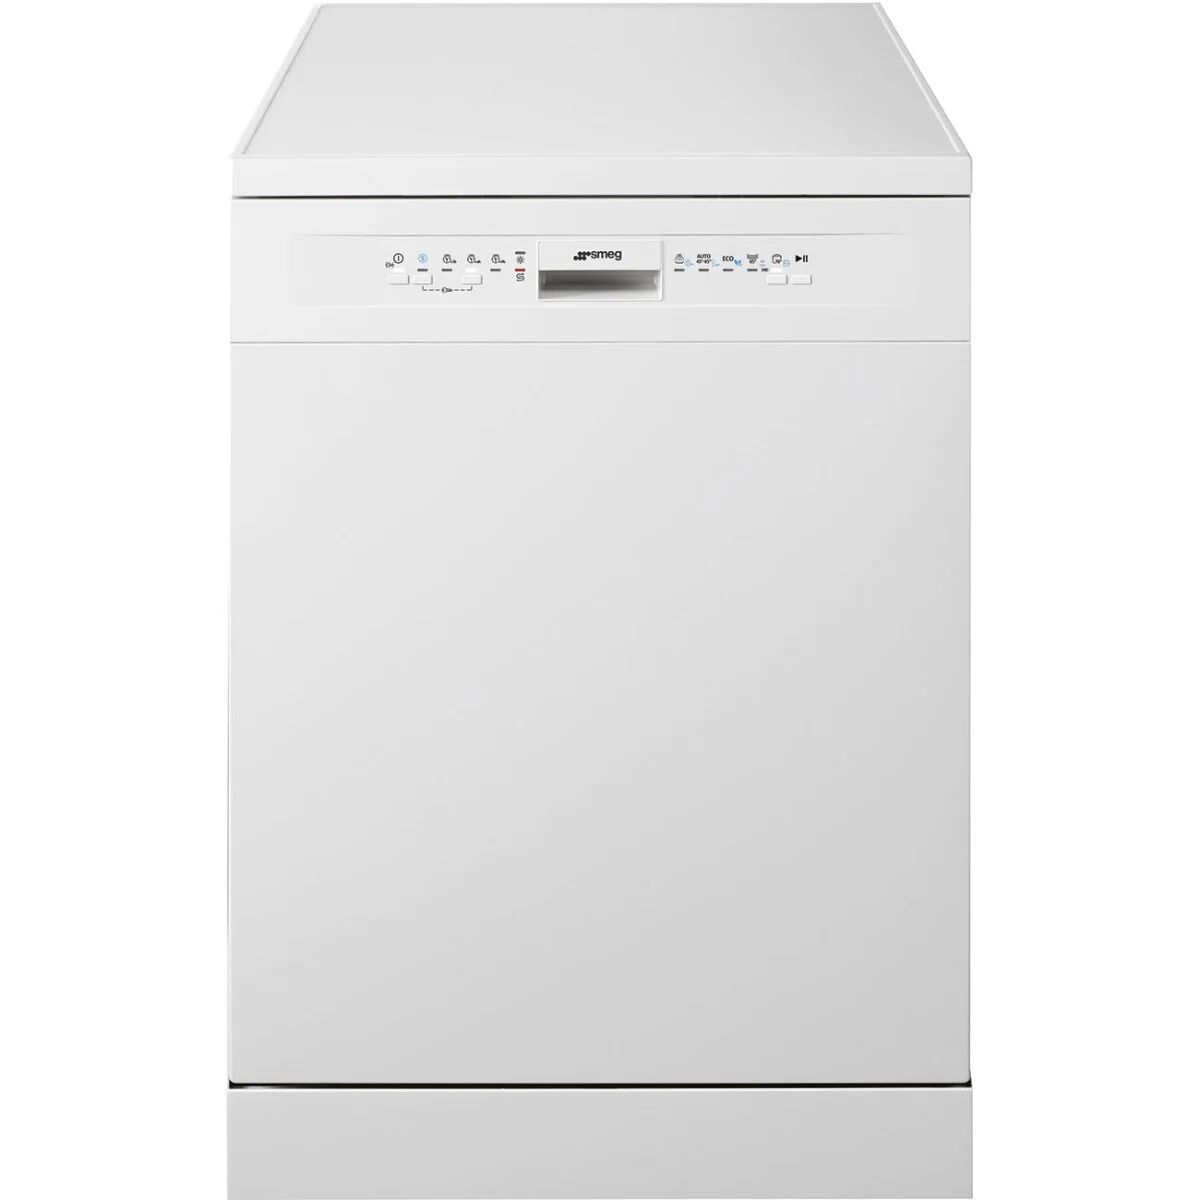 Smeg DF352CW 60cm White Freestanding Dishwasher - White